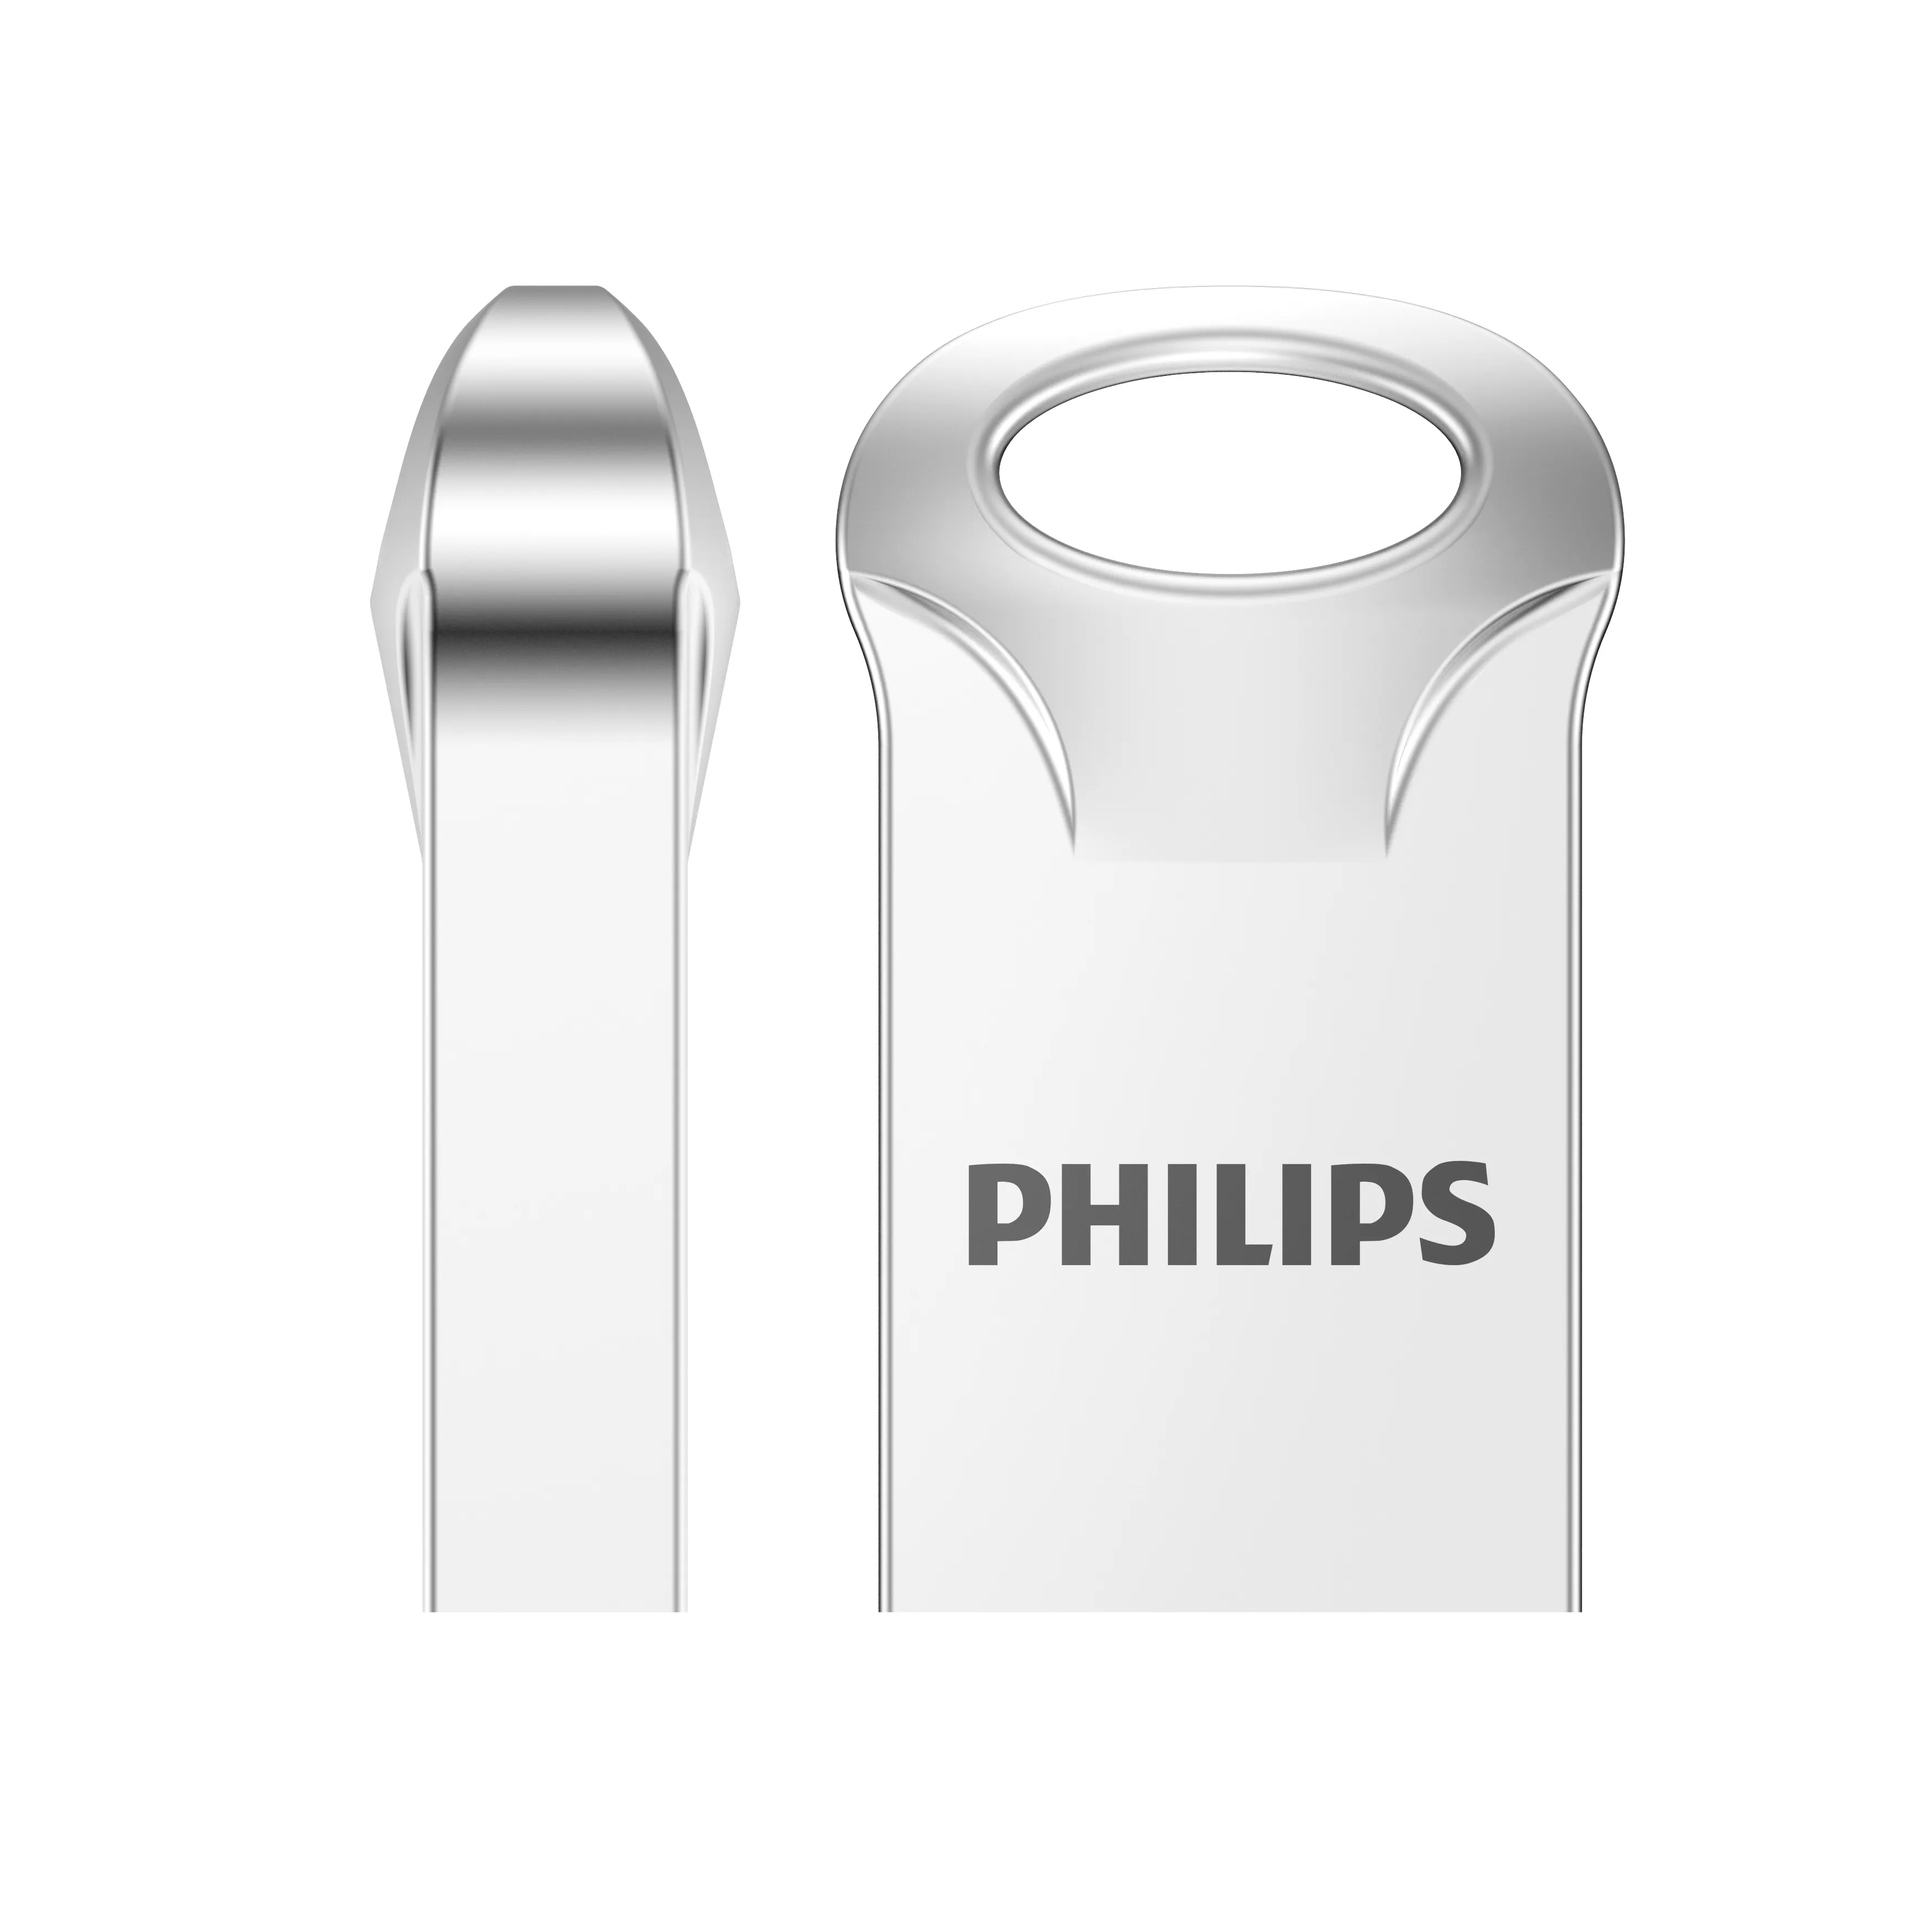 PHILIPS Usb 3.0フラッシュドライブテラバイトフラッシュメモリスティック1000gbサムペンドライブディスクテラバイトUsbフラッシュドライブ